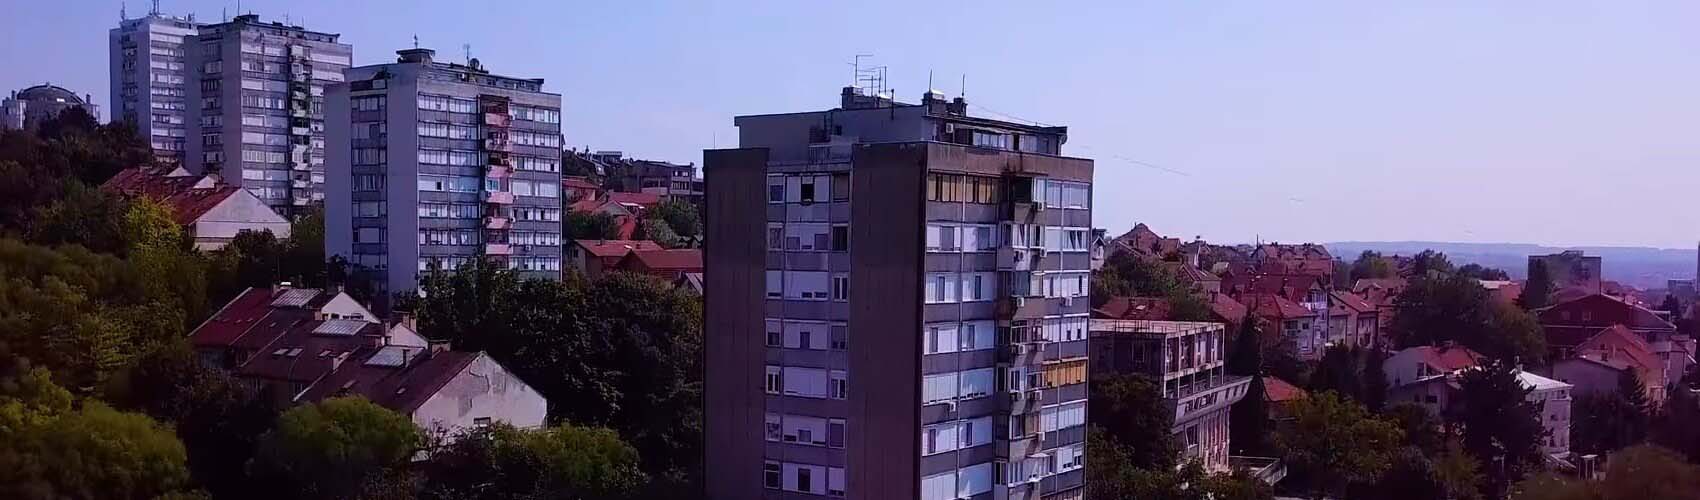 Iznajmljivanje kombija Banovo brdo | DeltaTop, Beograd